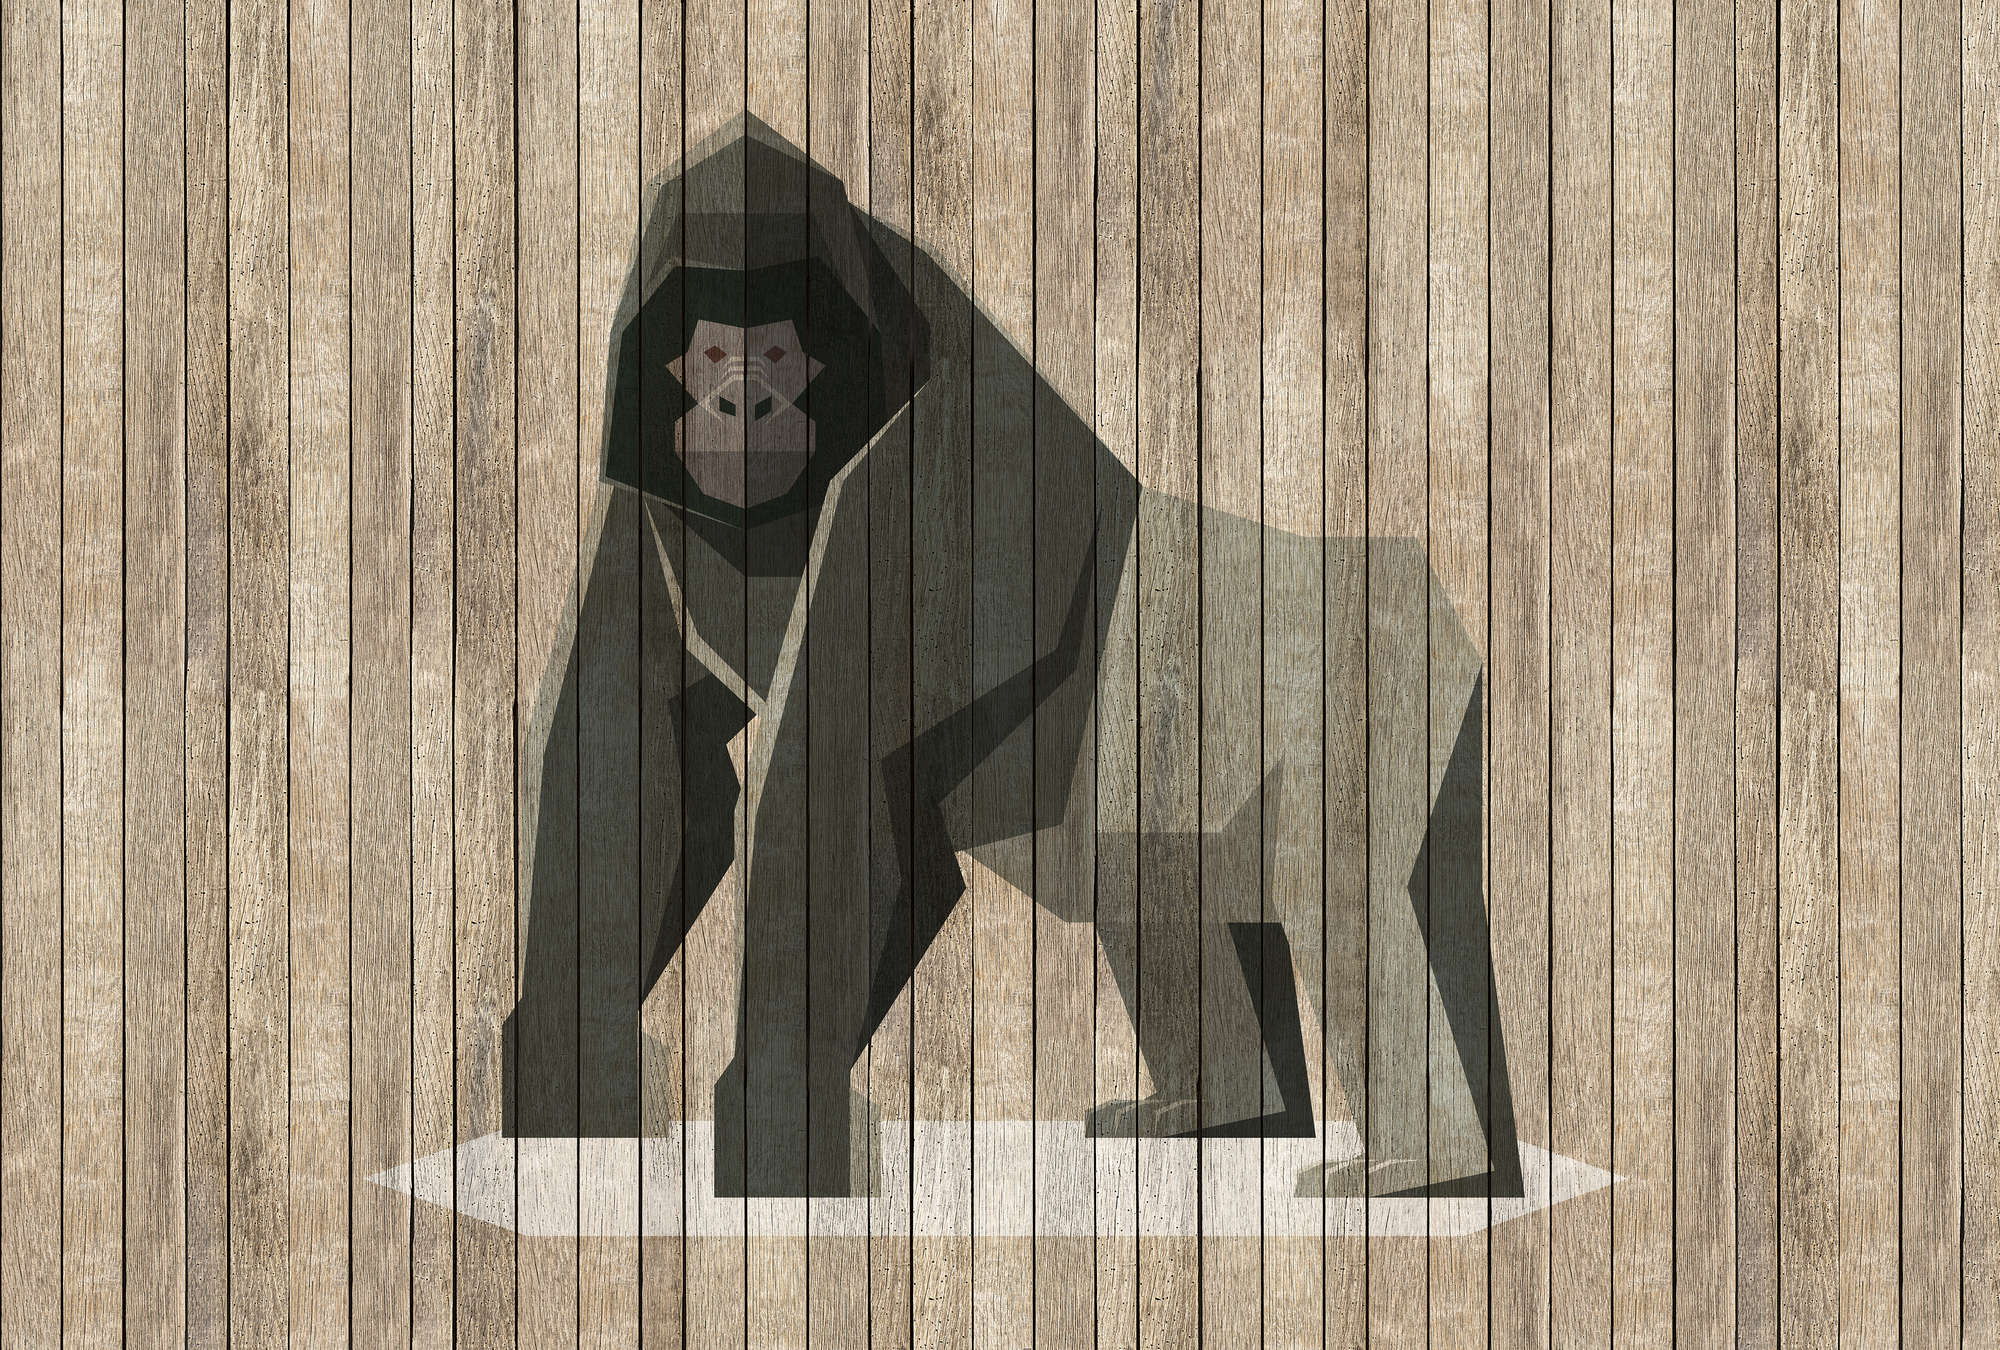             Born to Be Wild 3 - Digital behang Gorilla on Board Wall - Houten Panelen Breedt - Beige, Bruin | Premium Smooth Vliesbehang
        